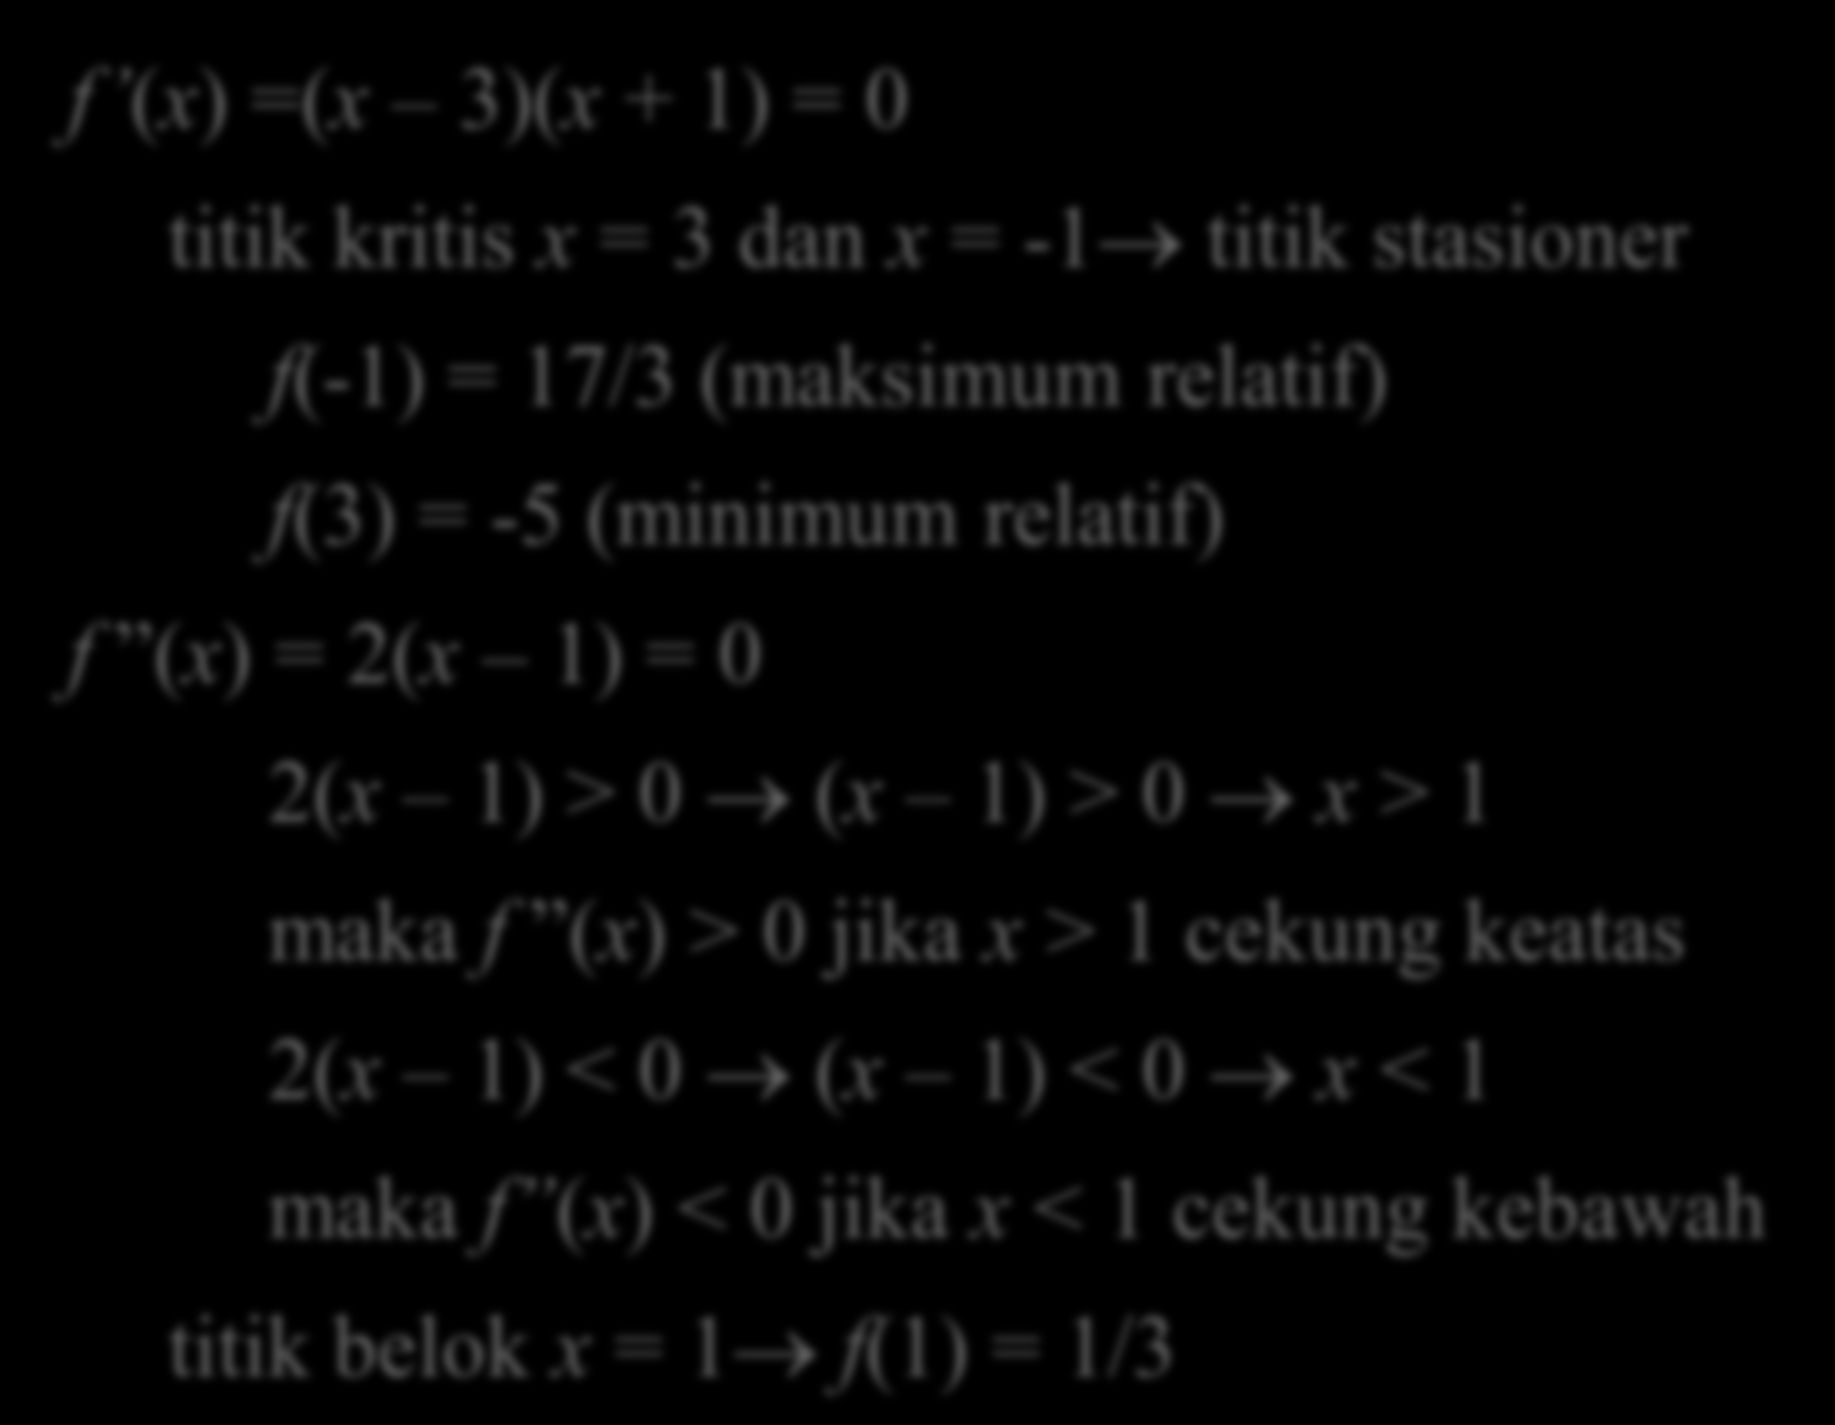 () =( 3)( + 1) = titik kritis = 3 dan = -1 titik stasioner (-1) = 17/3 (maksimum relati) (3) = -5 (minimum relati) () = 2( 1) =